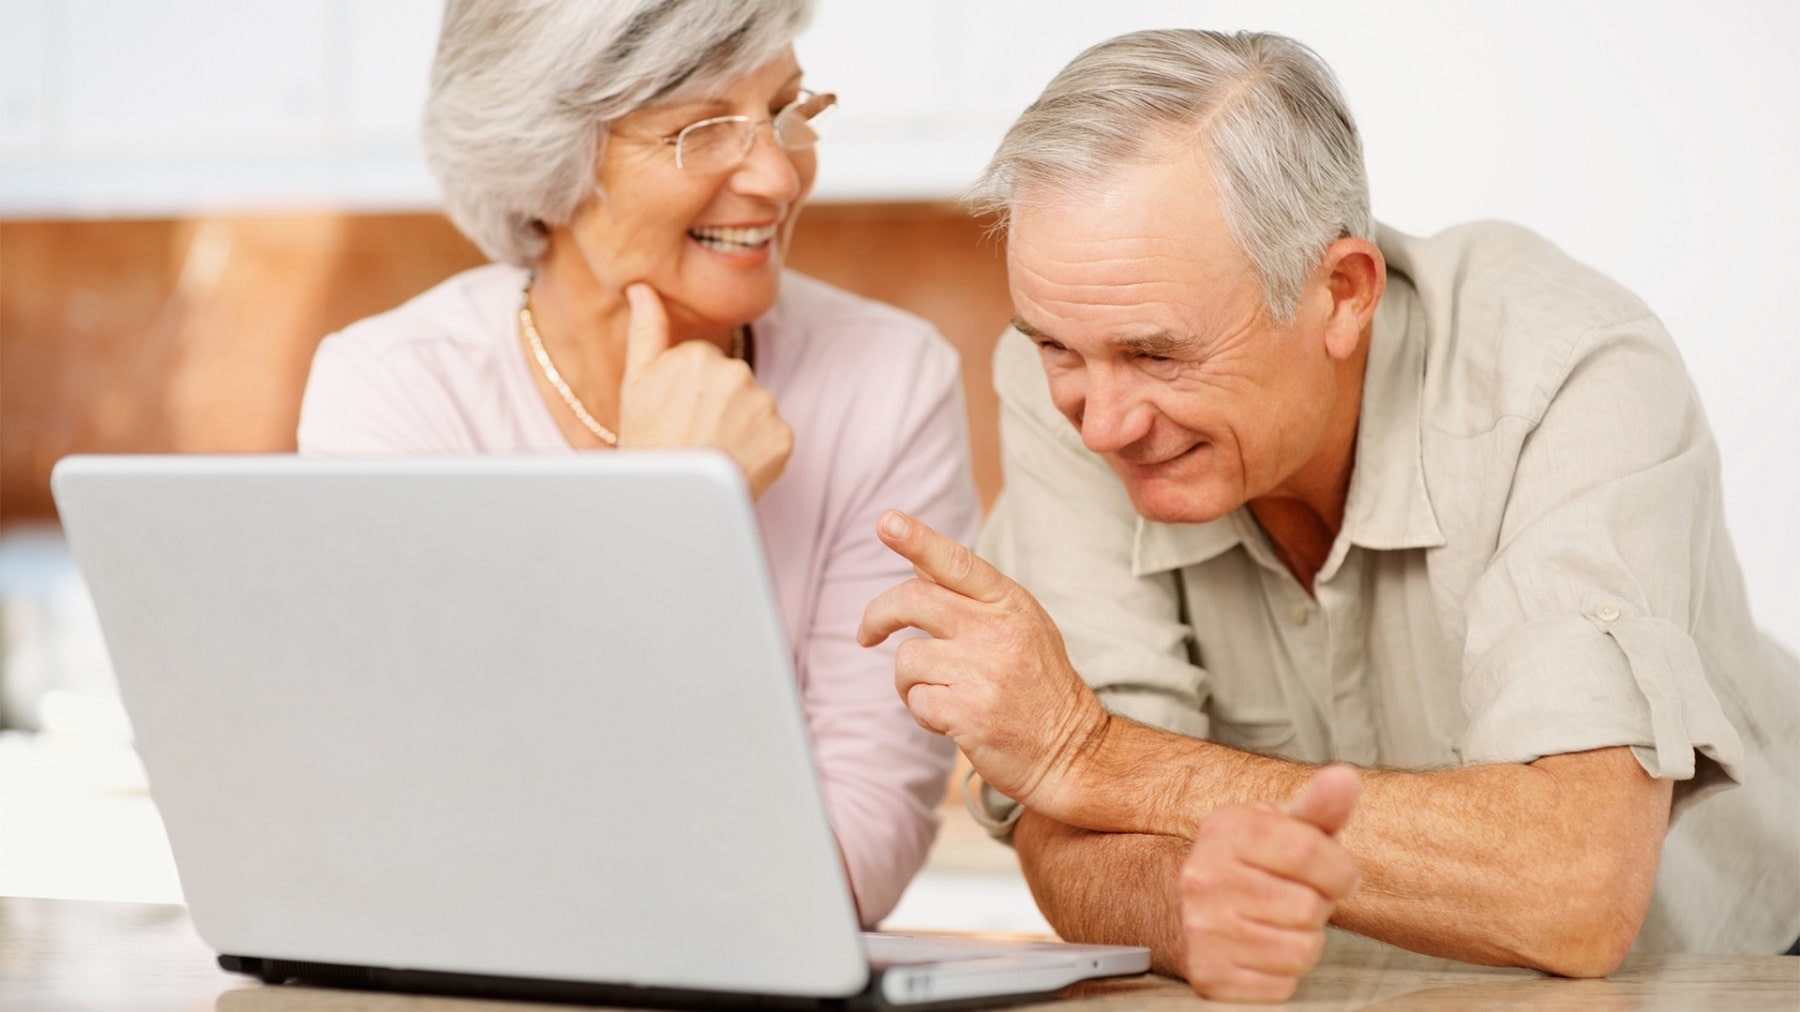 пожилые смотрят в компьютер и улыбаются